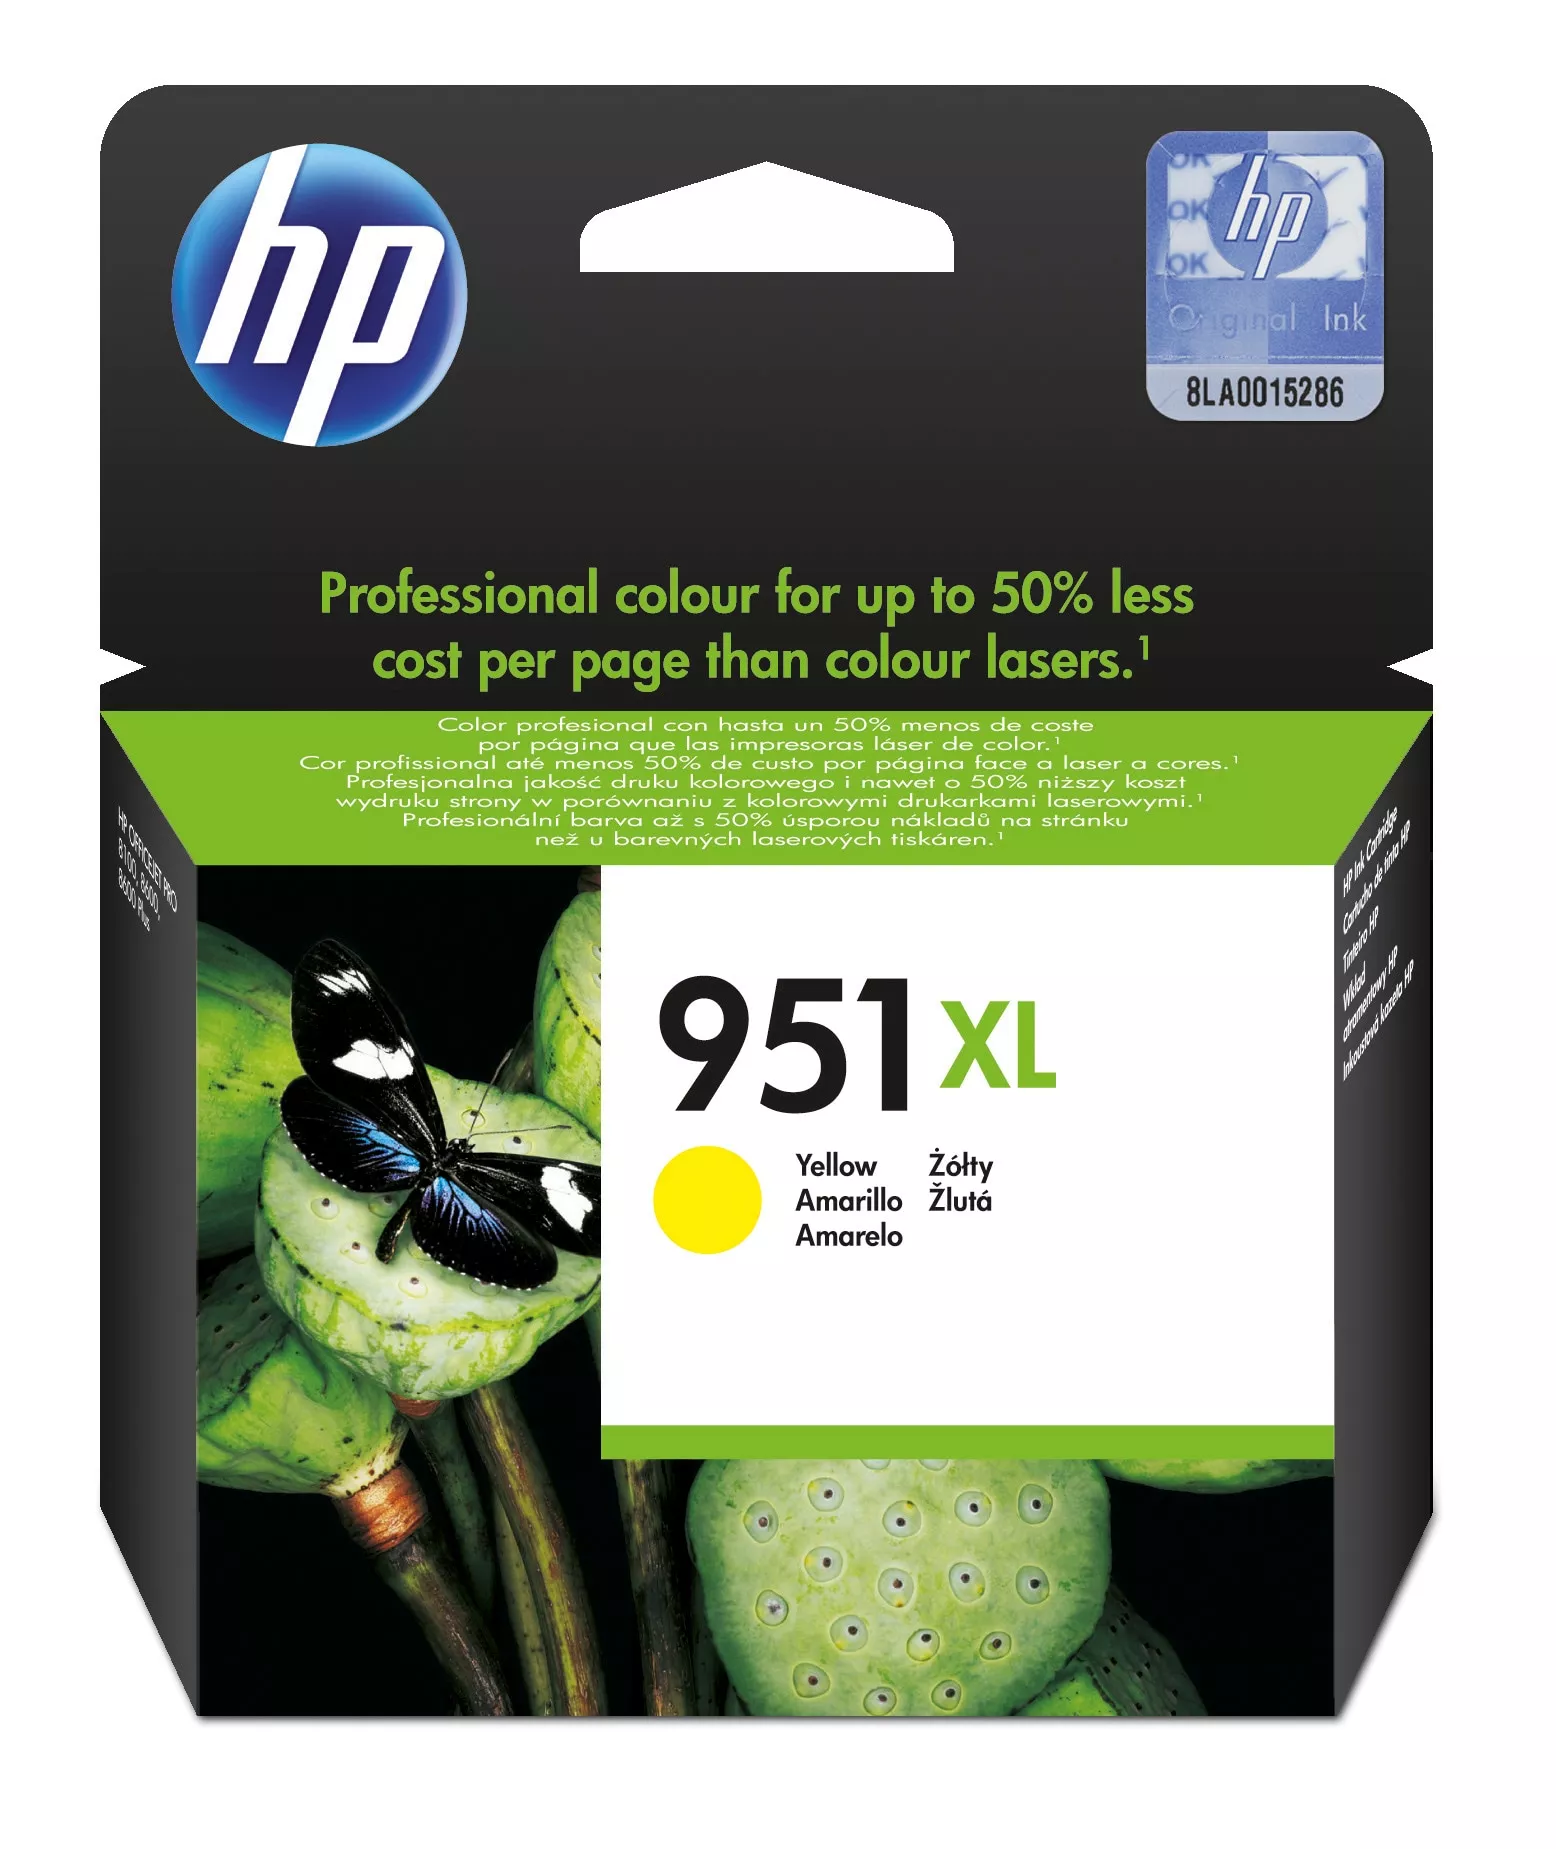 Achat HP 951XL original Ink cartridge CN048AE 301 yellow high au meilleur prix